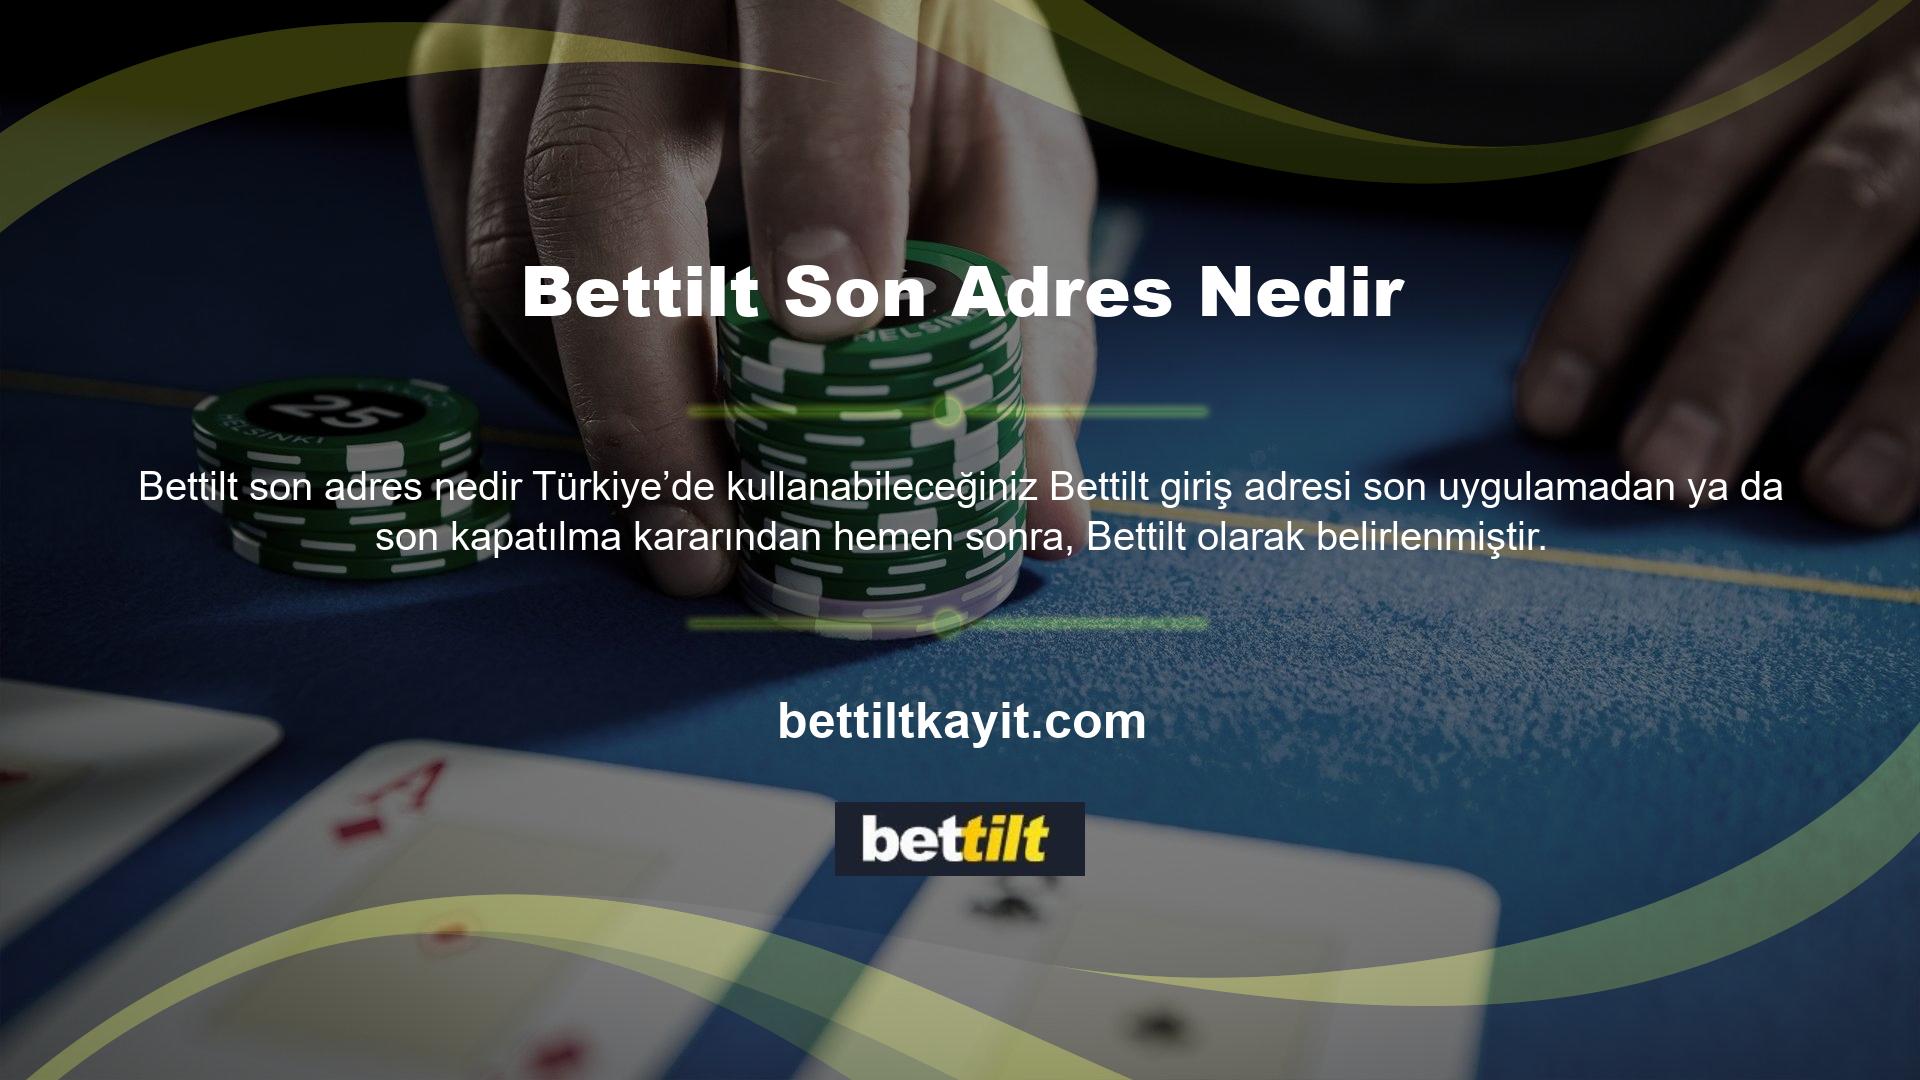 Bettilt son adres olarak Bettilt şeklinde bir belirleme yapmış ve kullanıcıları, Türkiye üzerinden siteyi kullananları bir kez daha bu yeni giriş adresi ile karşılamaya başlamıştır